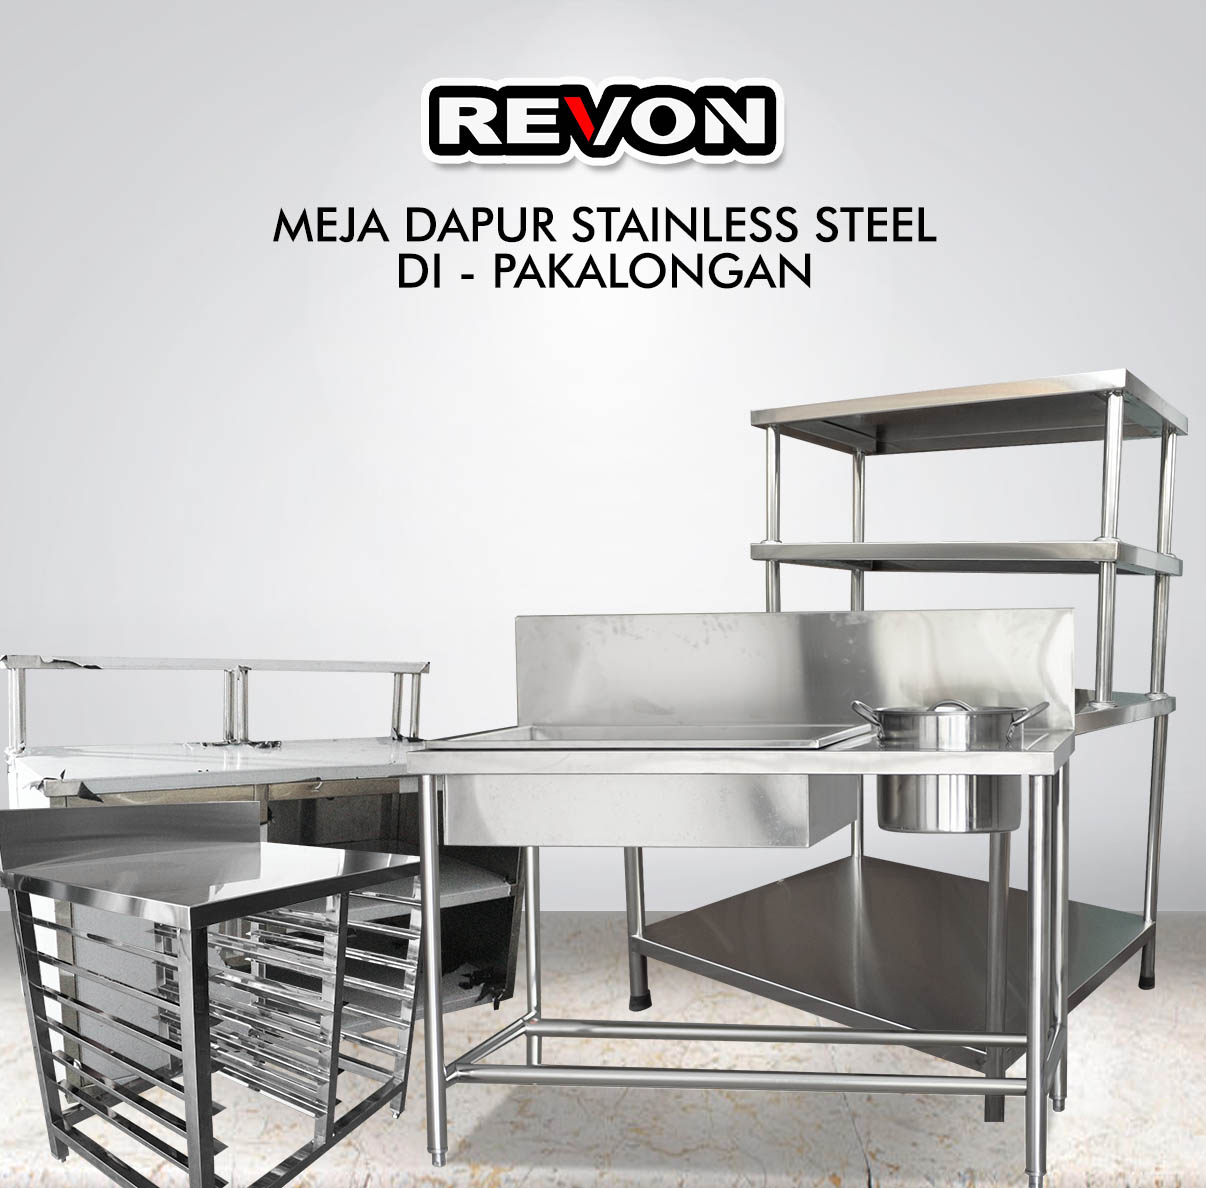  Jual Meja Dapur Stainless Steel  di Pakalongan REYMETAL 